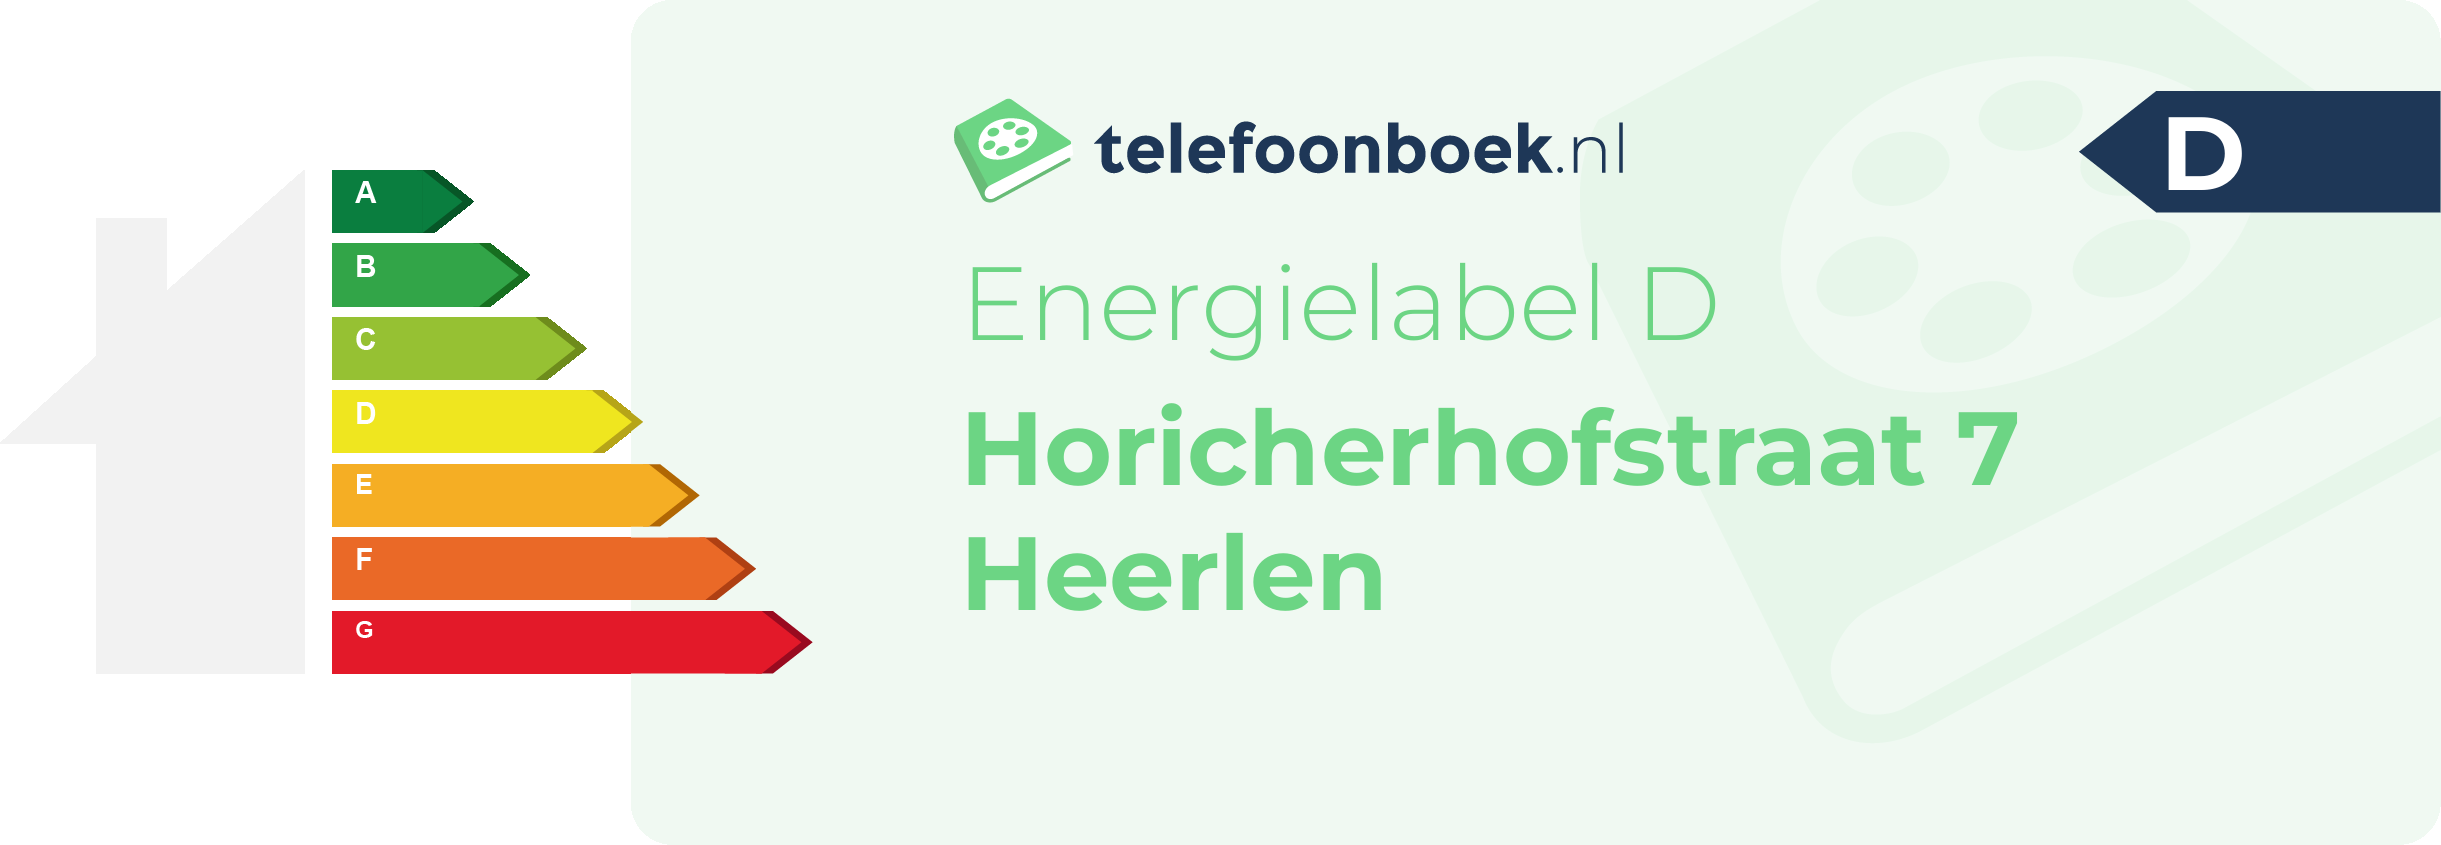 Energielabel Horicherhofstraat 7 Heerlen